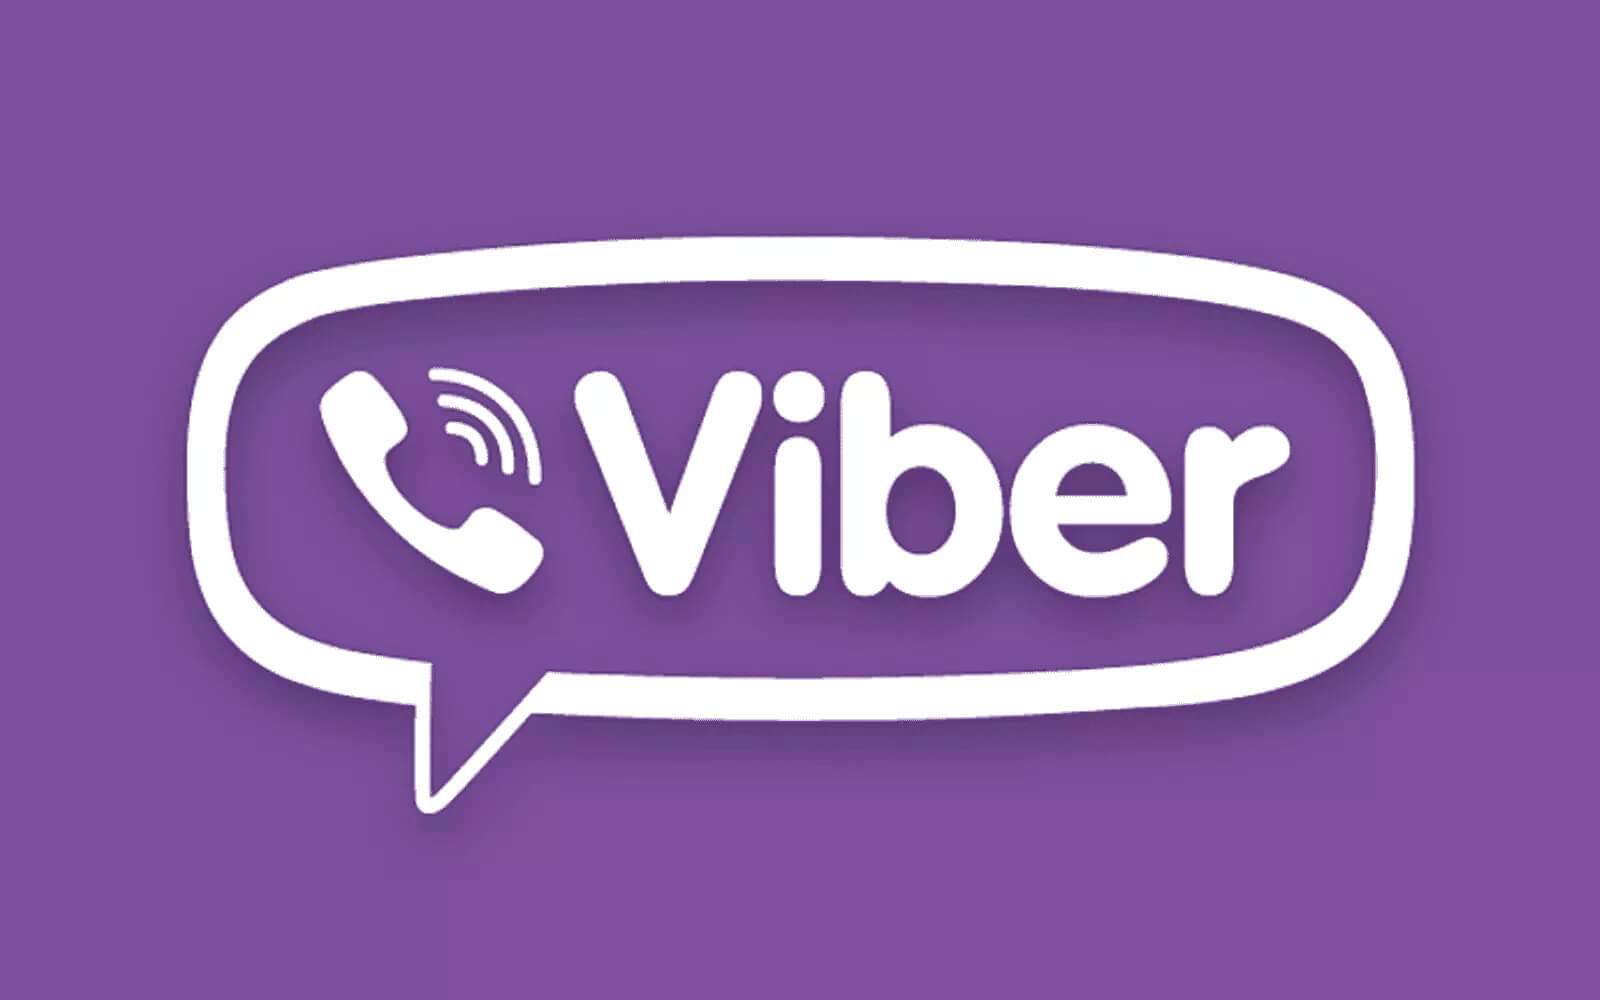 e-viber-app-logo.jpg